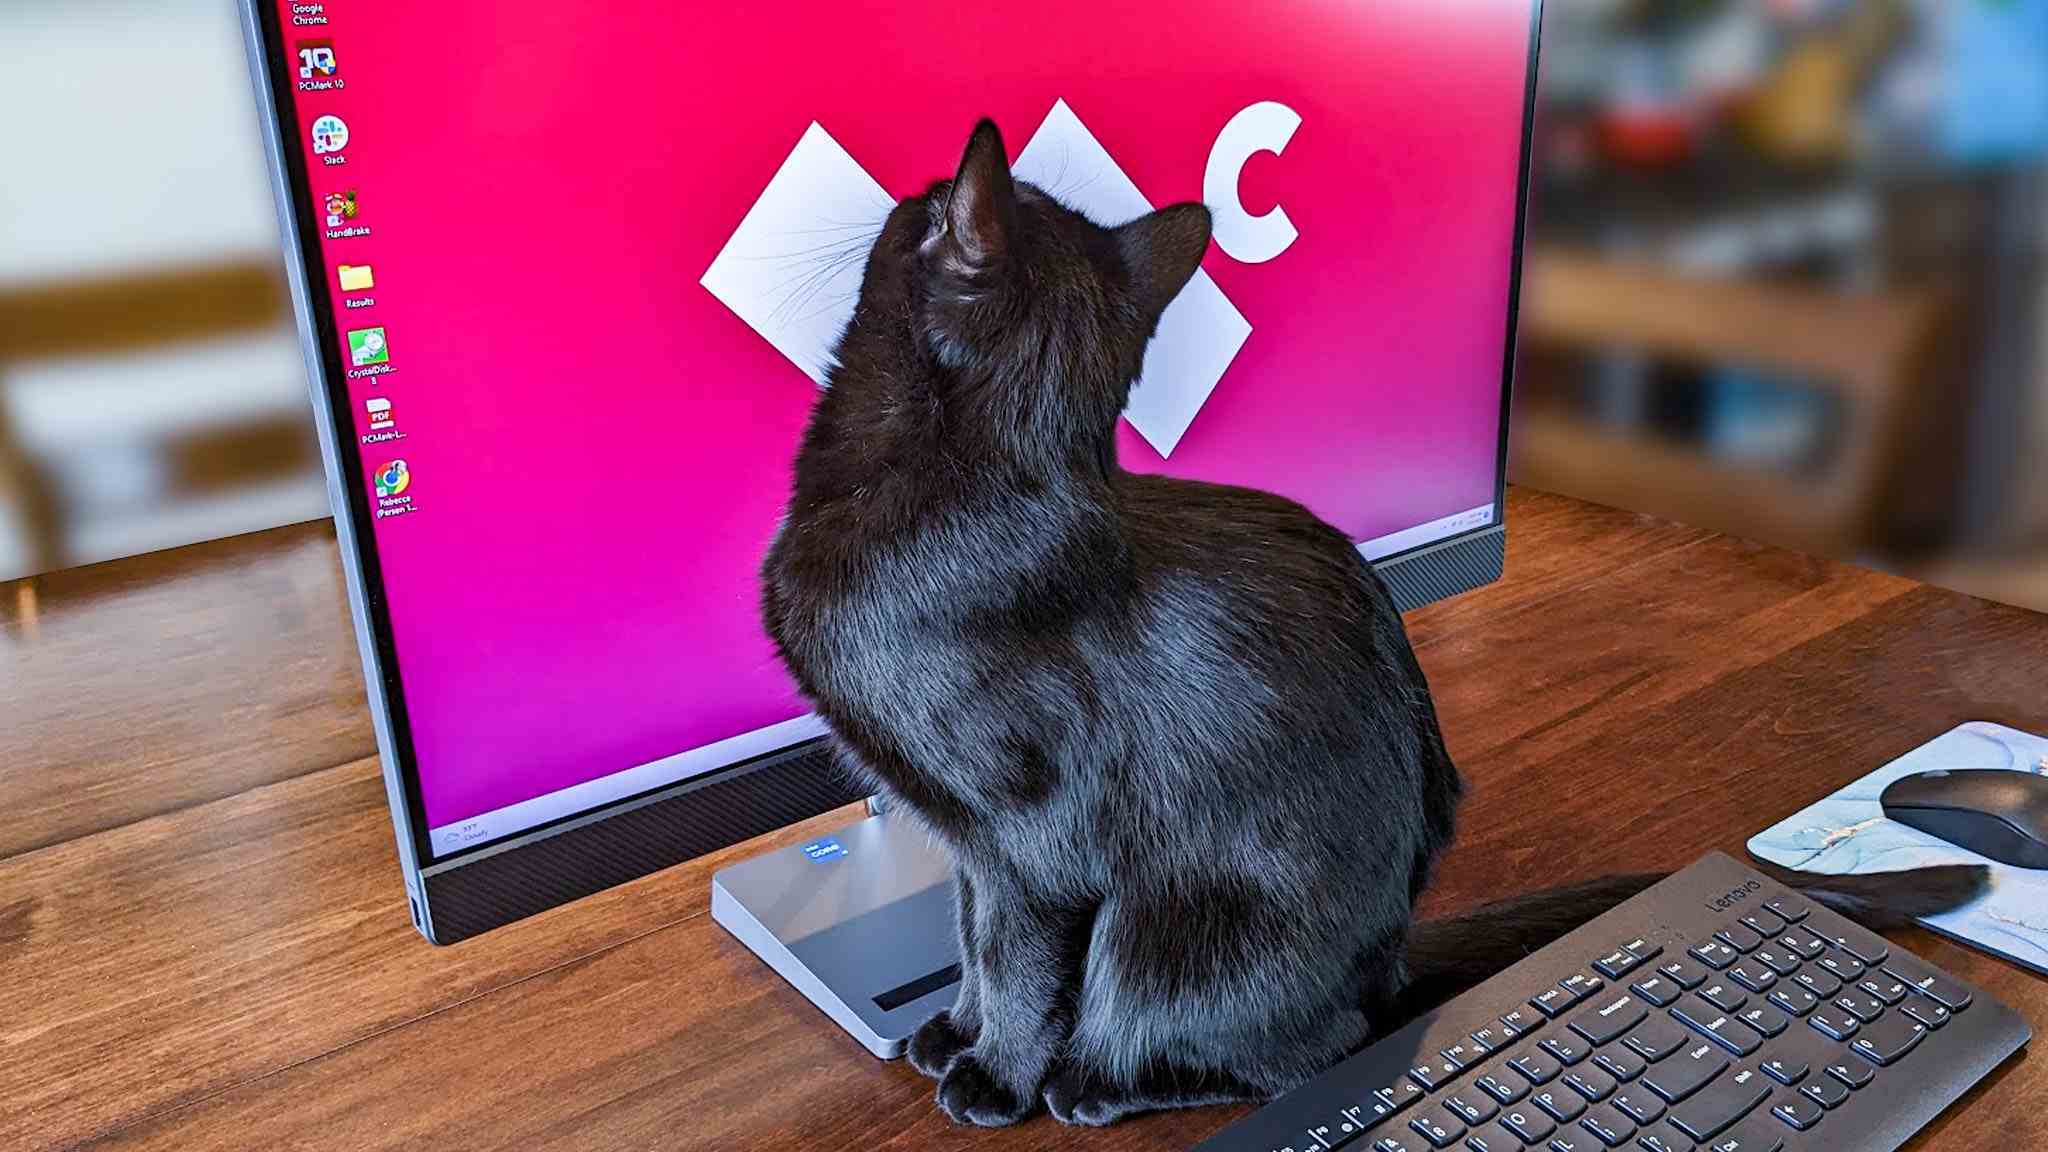 Bilgisayar monitörüne bakan kara kedi.